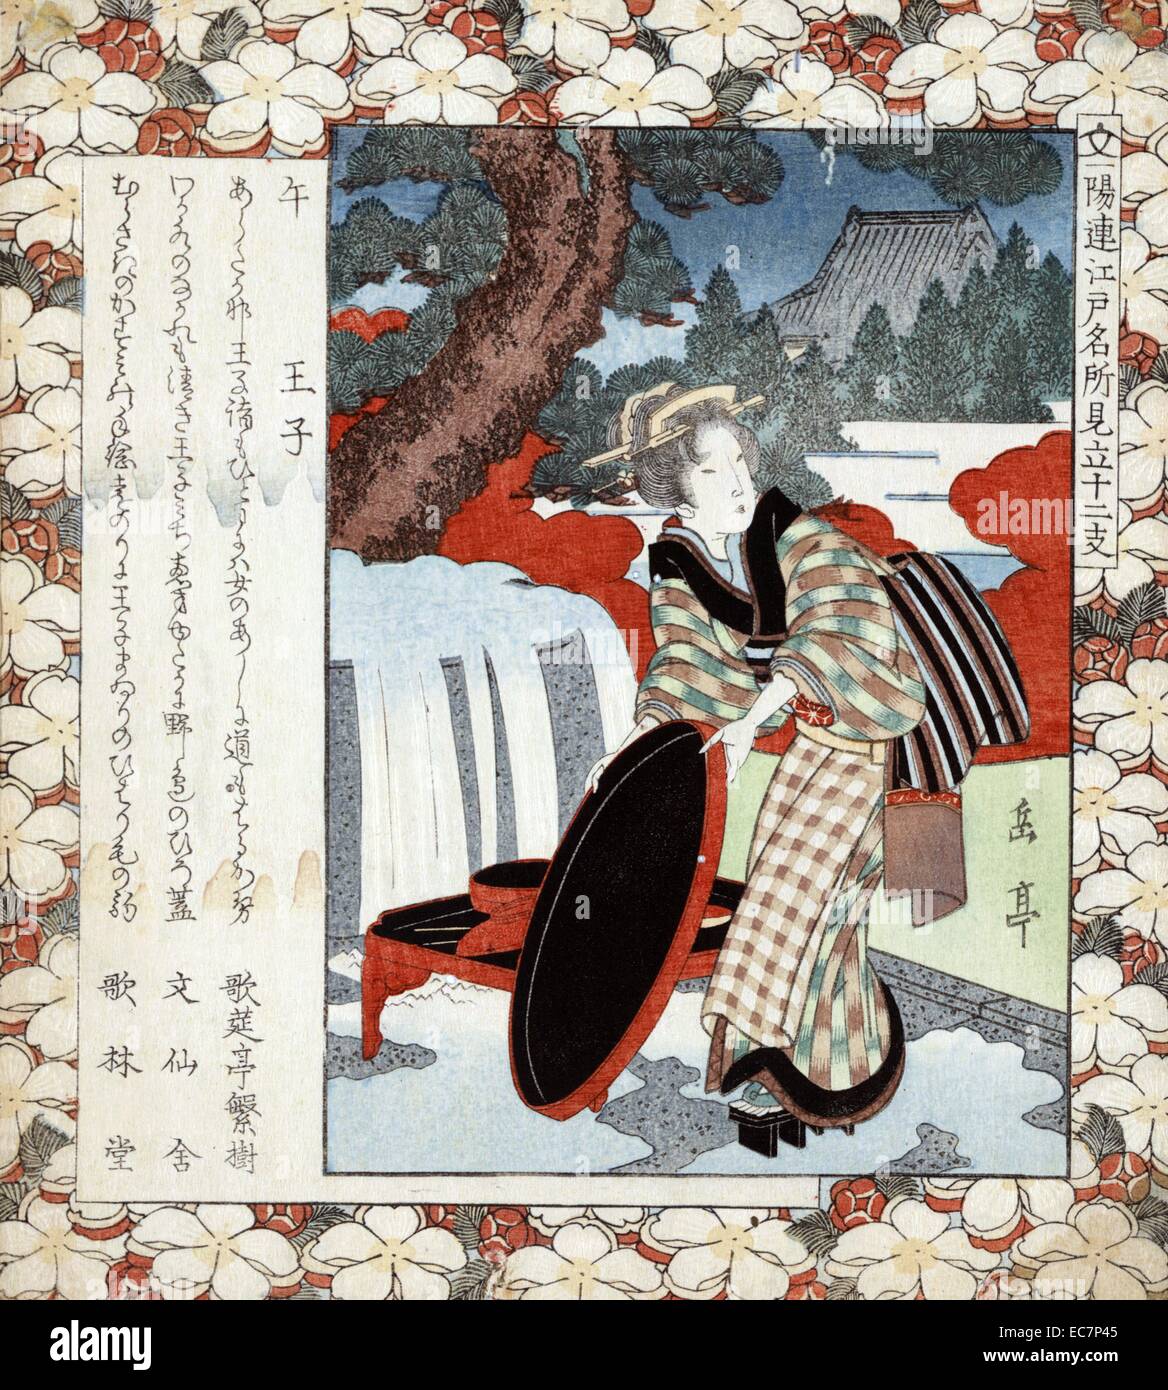 Uma oji-Jahr des Pferdes. Drucken zeigt eine Frau, die unter einem Baum, das Tragen von Kimonos und Geta, mit einem grossen Tablett oder Abdeckung. Einen großen Topf oder Zisterne ist überfüllt neben dem Baum; Seite mit Blüten gemustert. Stockfoto